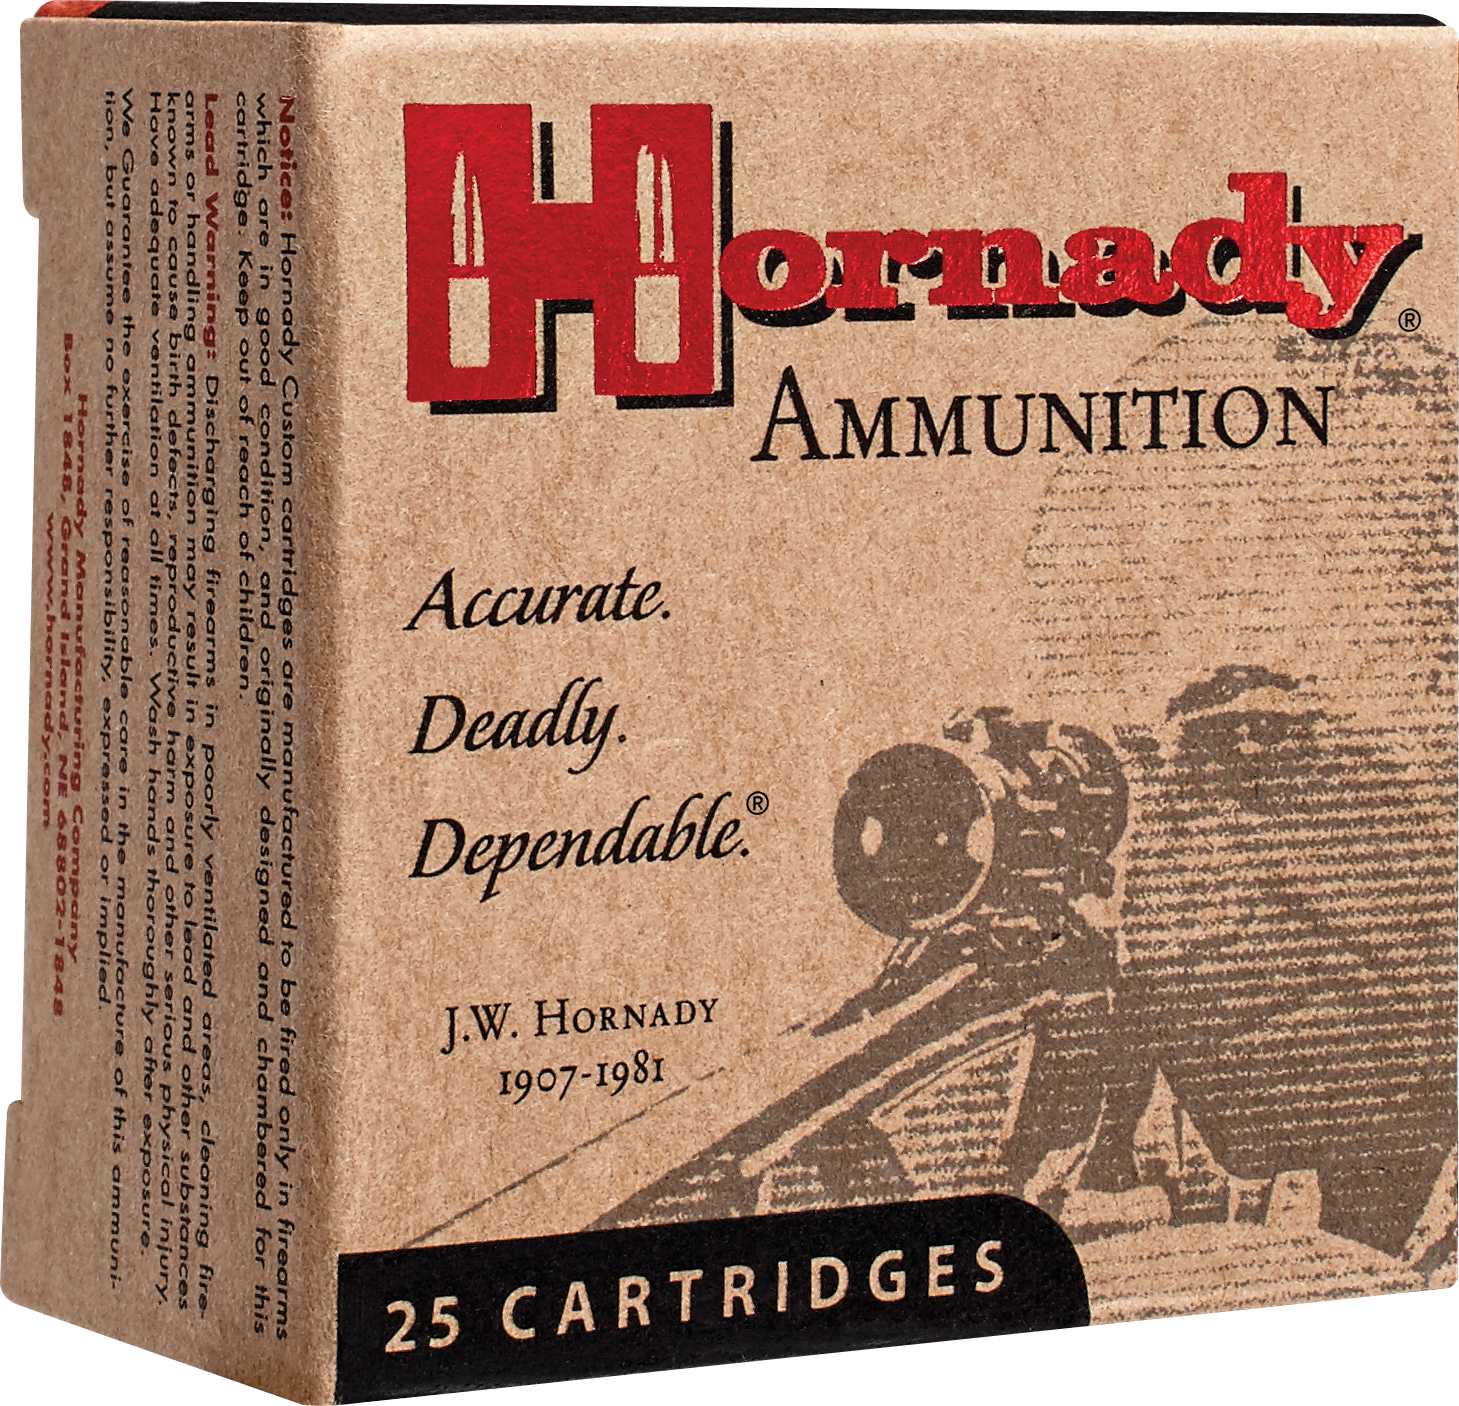 460 S&W Magnum 20 Rounds Ammunition Hornady 200 Grain Ballistic Tip